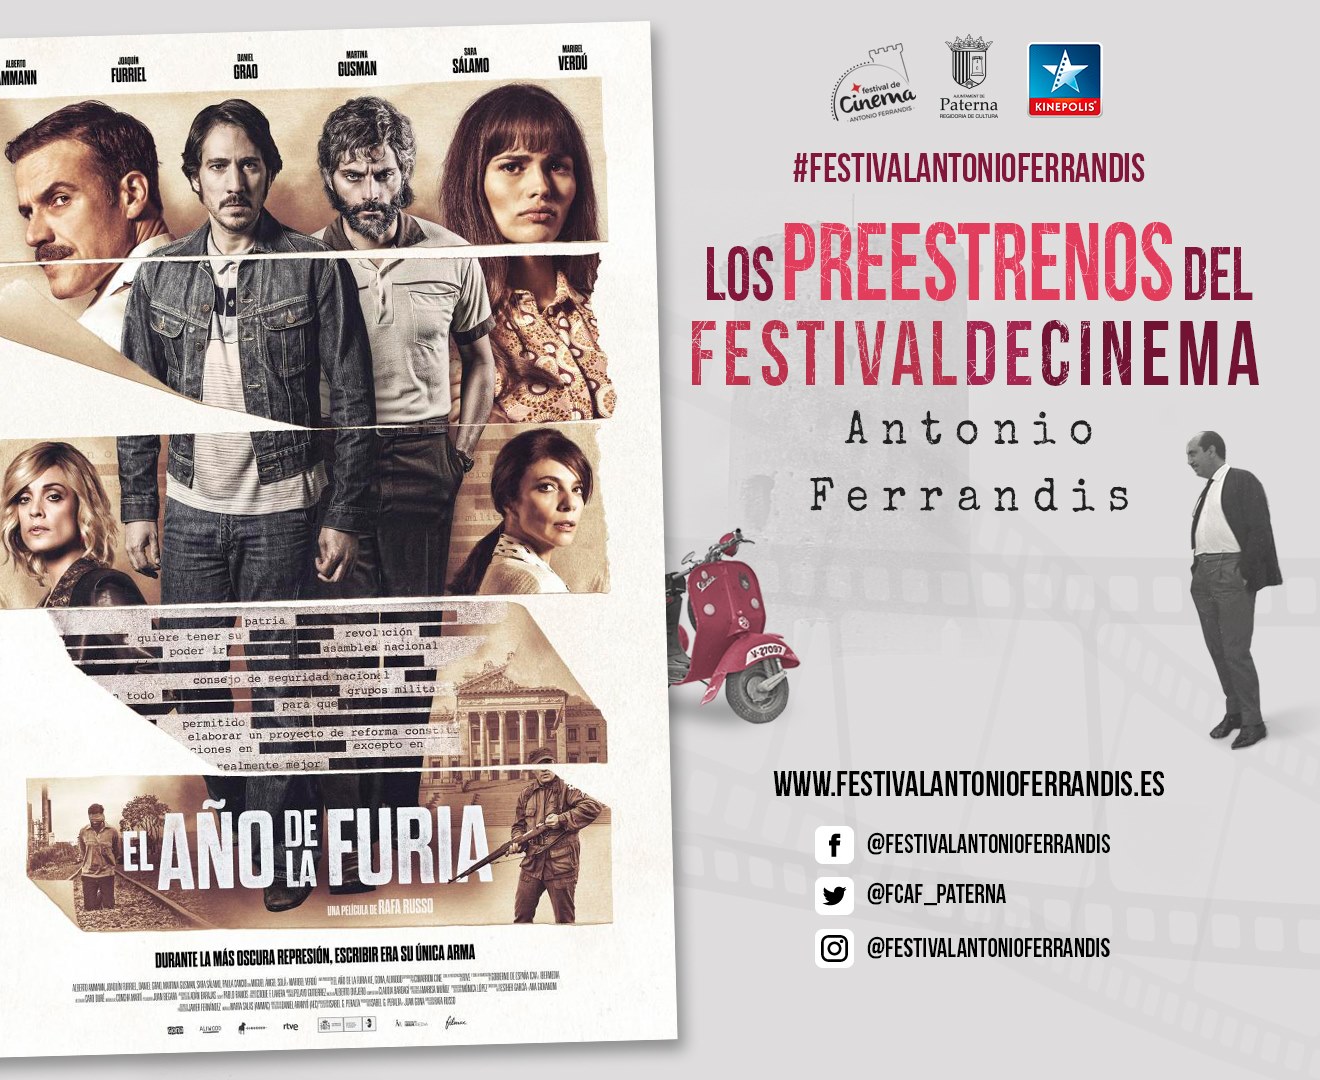 Regresan los preestrenos del Festival Antonio Ferrandis